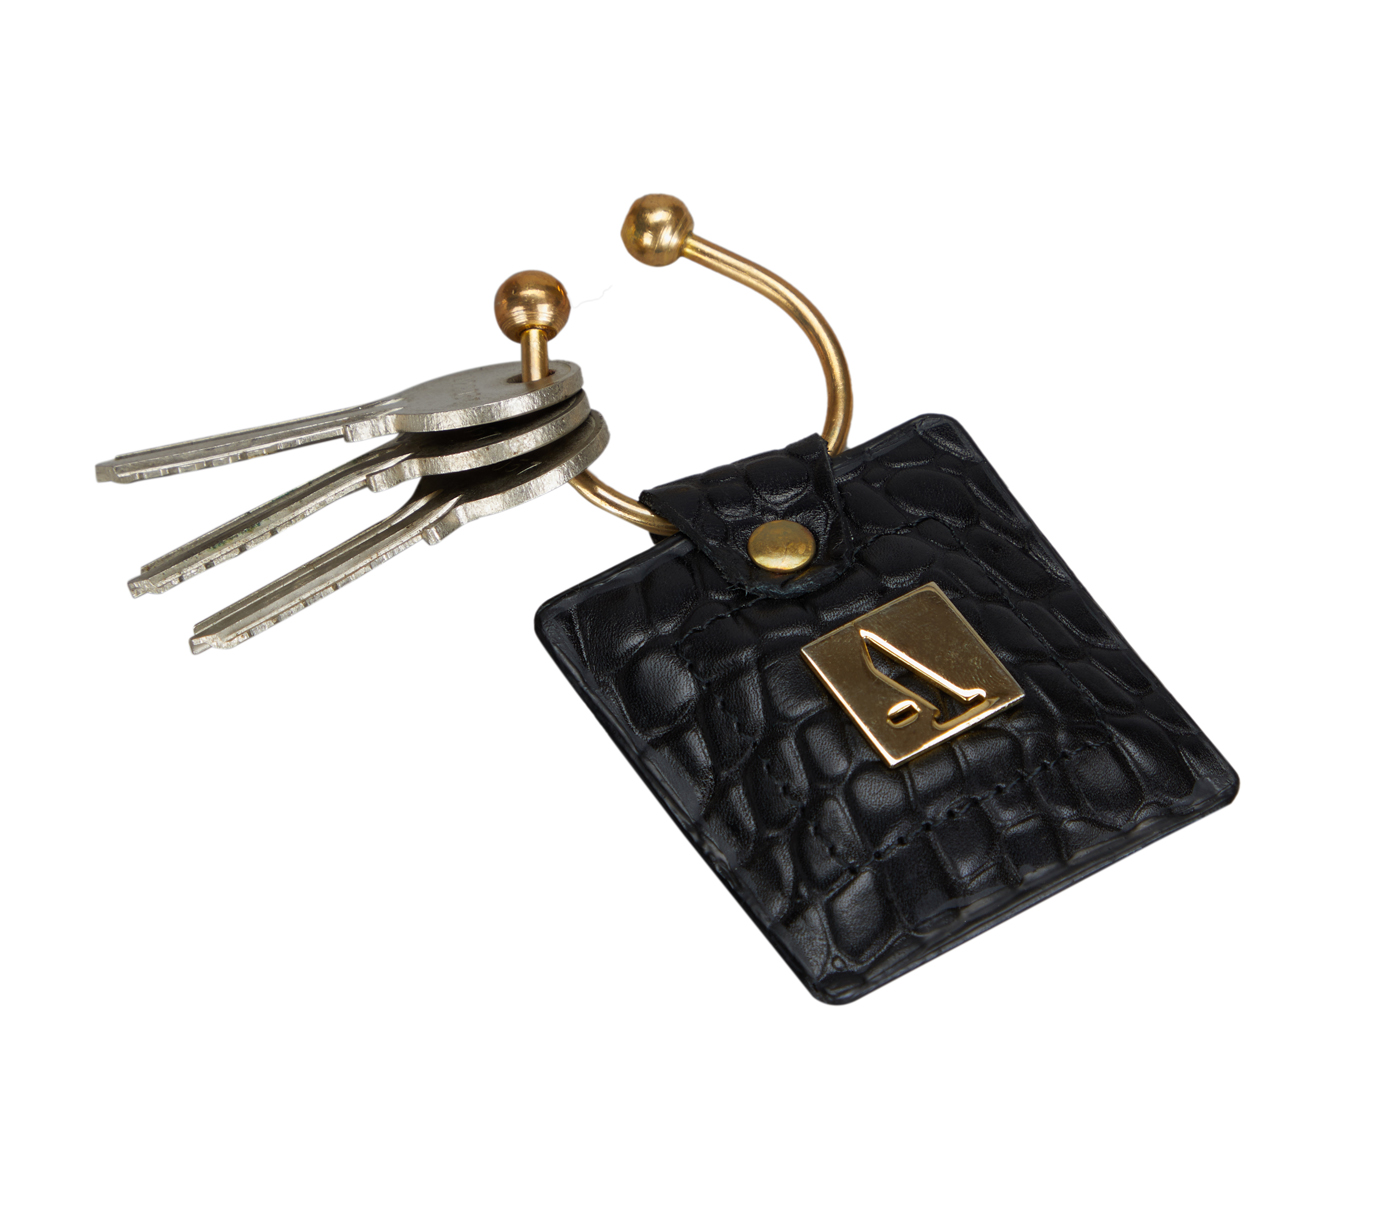 W269--Key holder with knob screw key fitting in Genuine Leather - Black